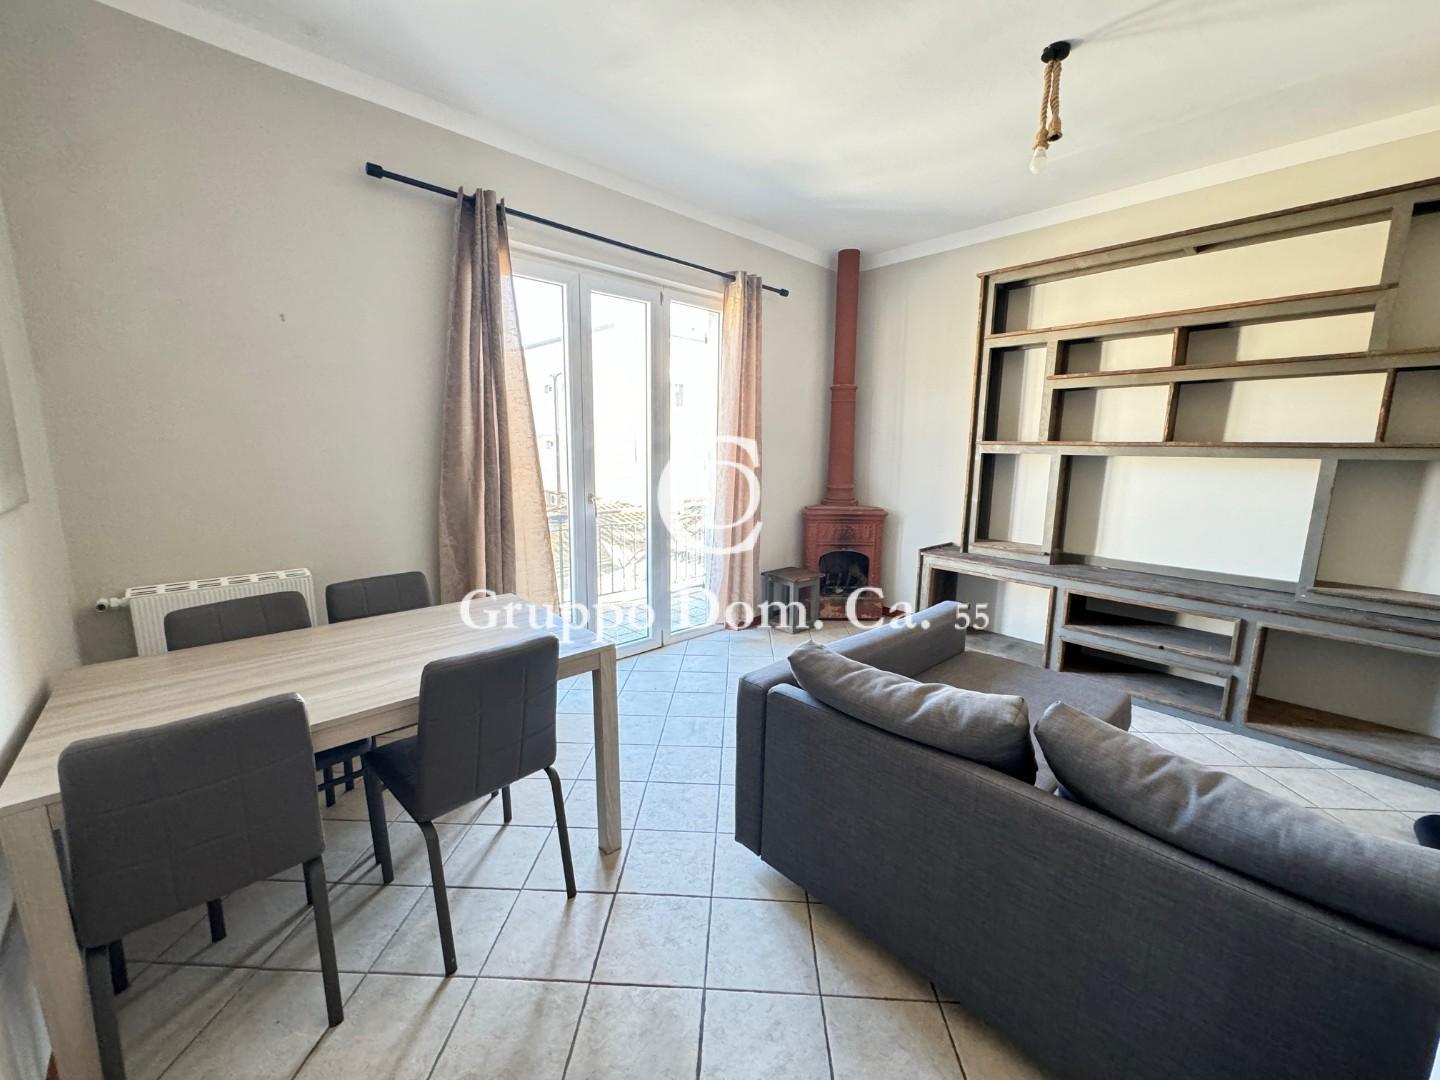 Appartamento in vendita a Forte dei Marmi, 7 locali, prezzo € 620.000 | PortaleAgenzieImmobiliari.it